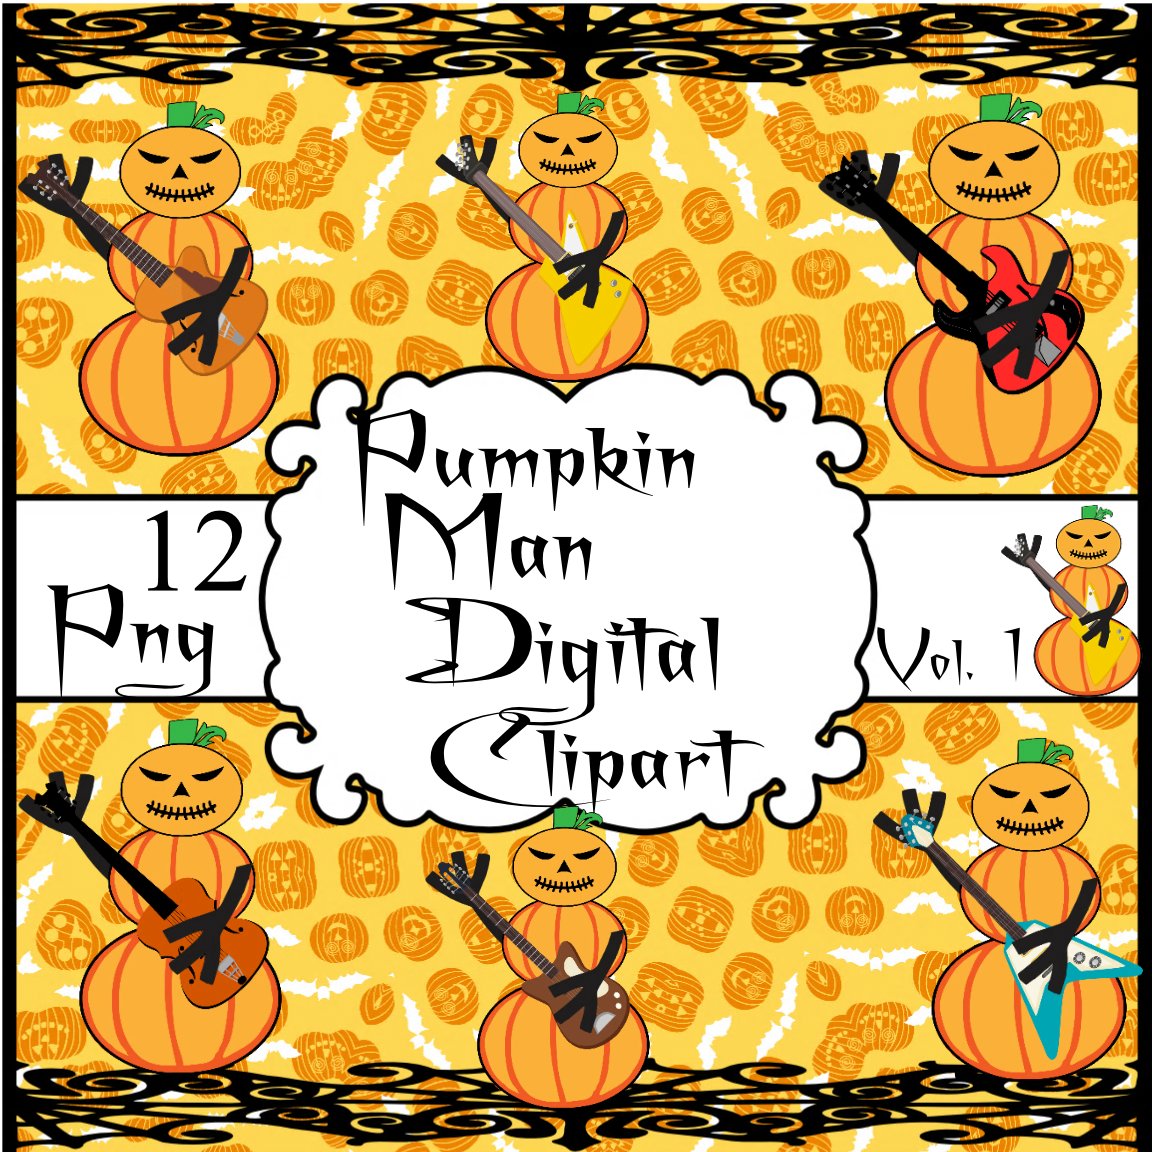 Pumpkin Man Vol. 1-Digital Clipart